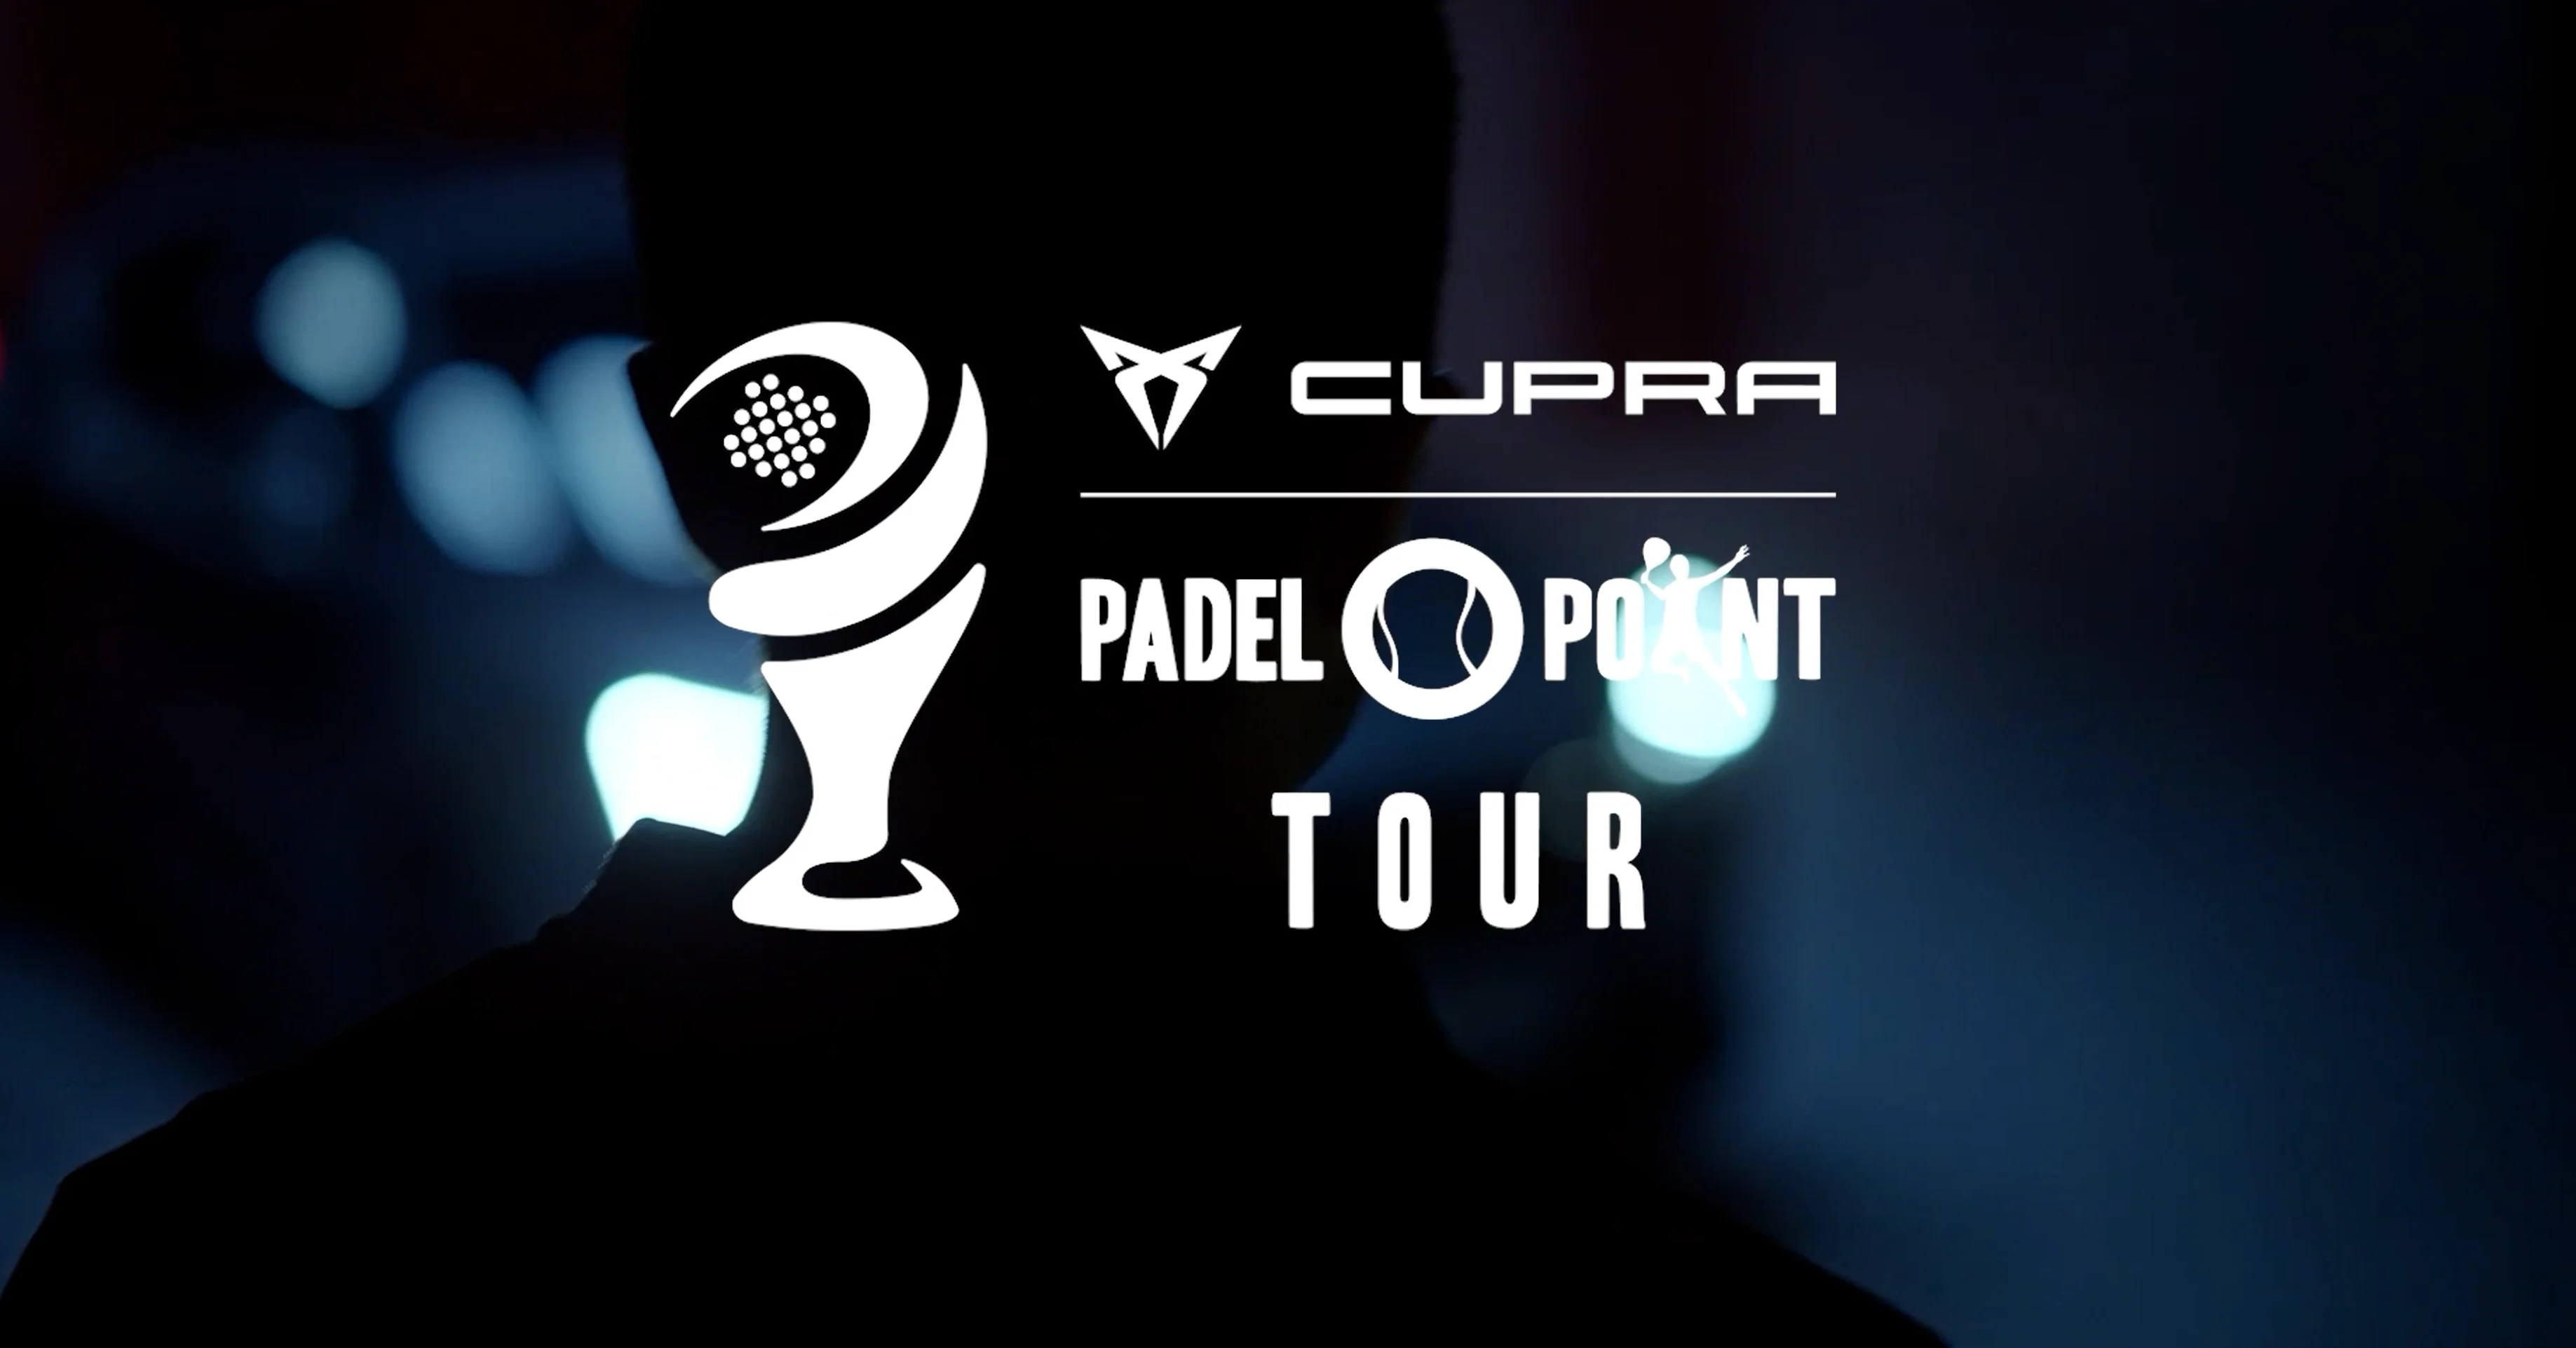 Cupra Padel-Point Tour Rennes – ¡Una exposición tentadora!